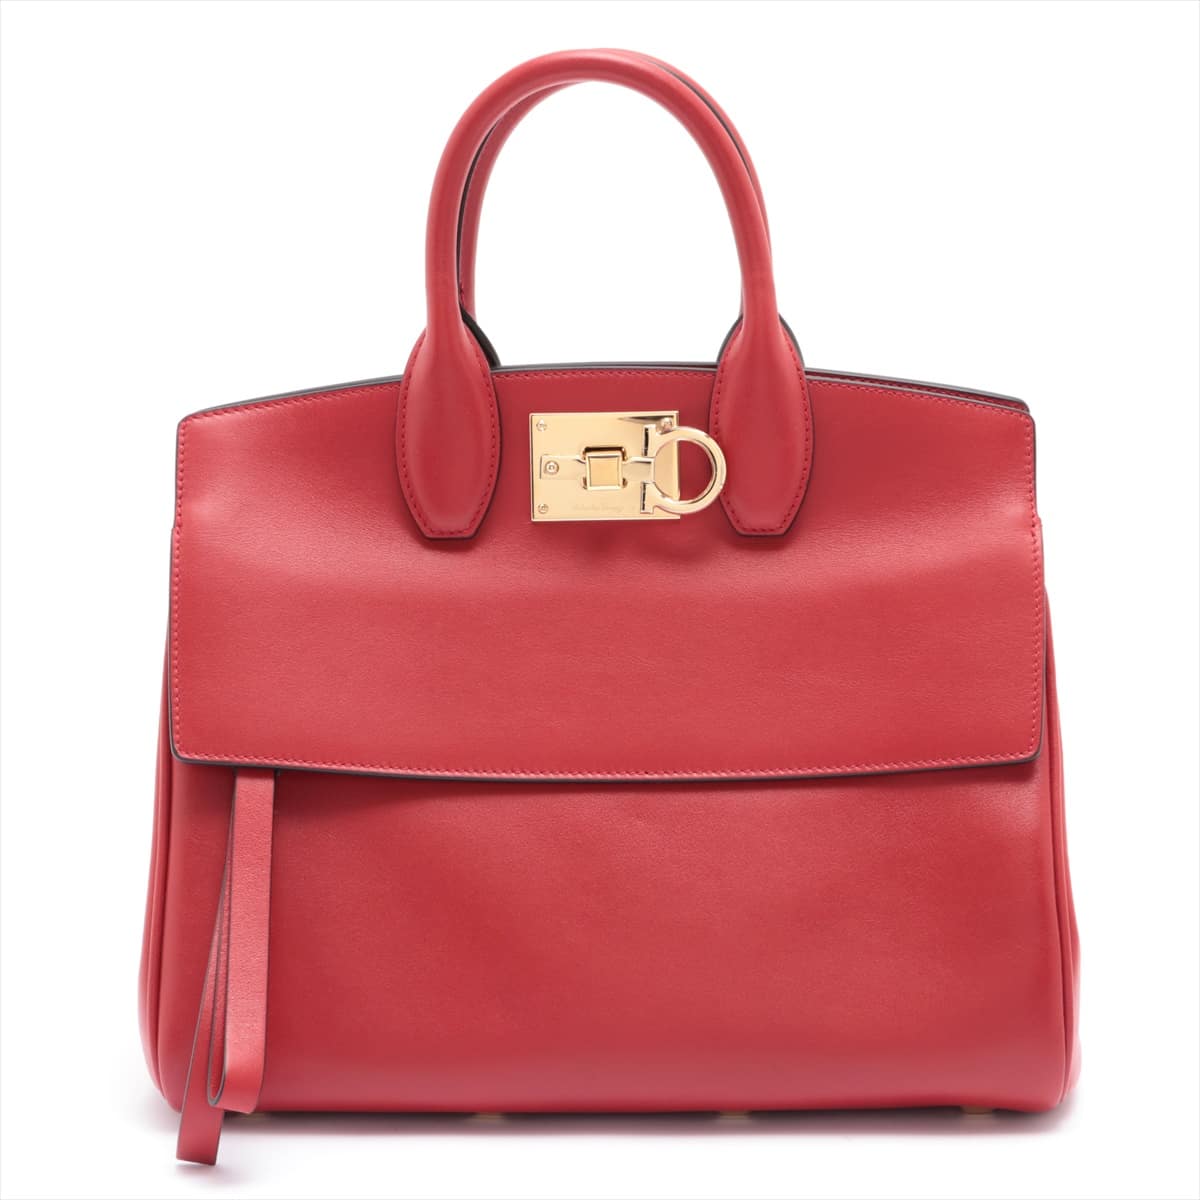 Ferragamo Gancini Leather 2way handbag Red